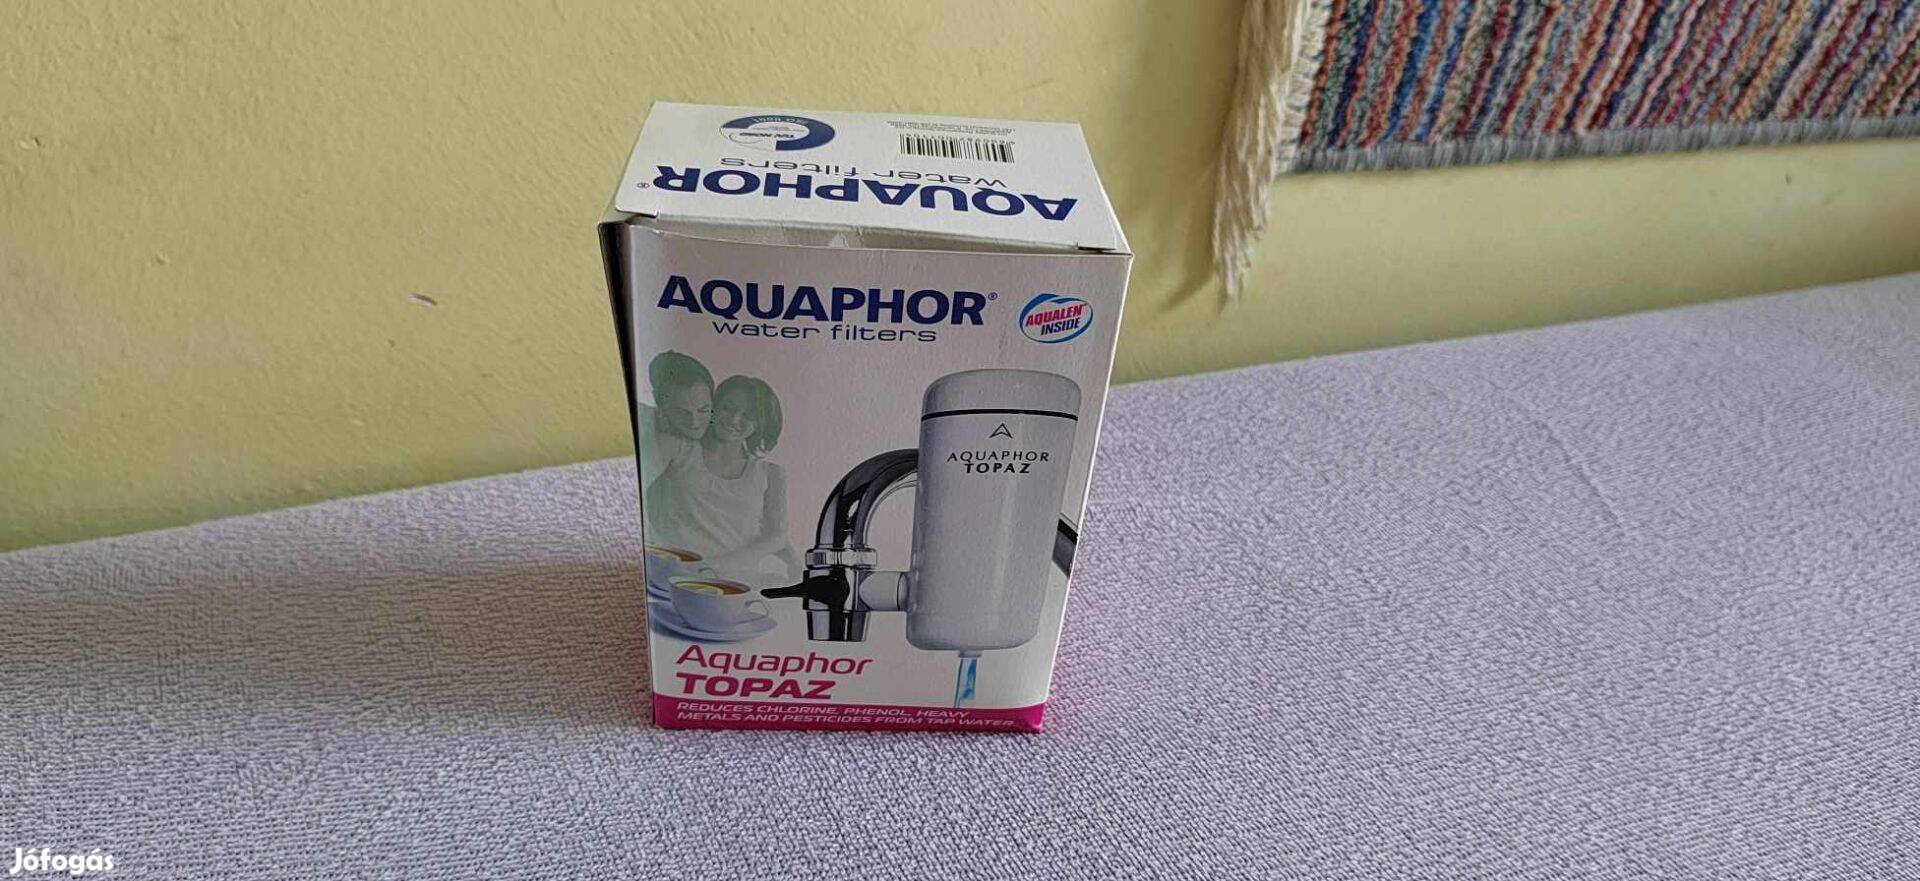 Aquaphor Topaz víztisztító / víz szűrő dobozában - sosem használt